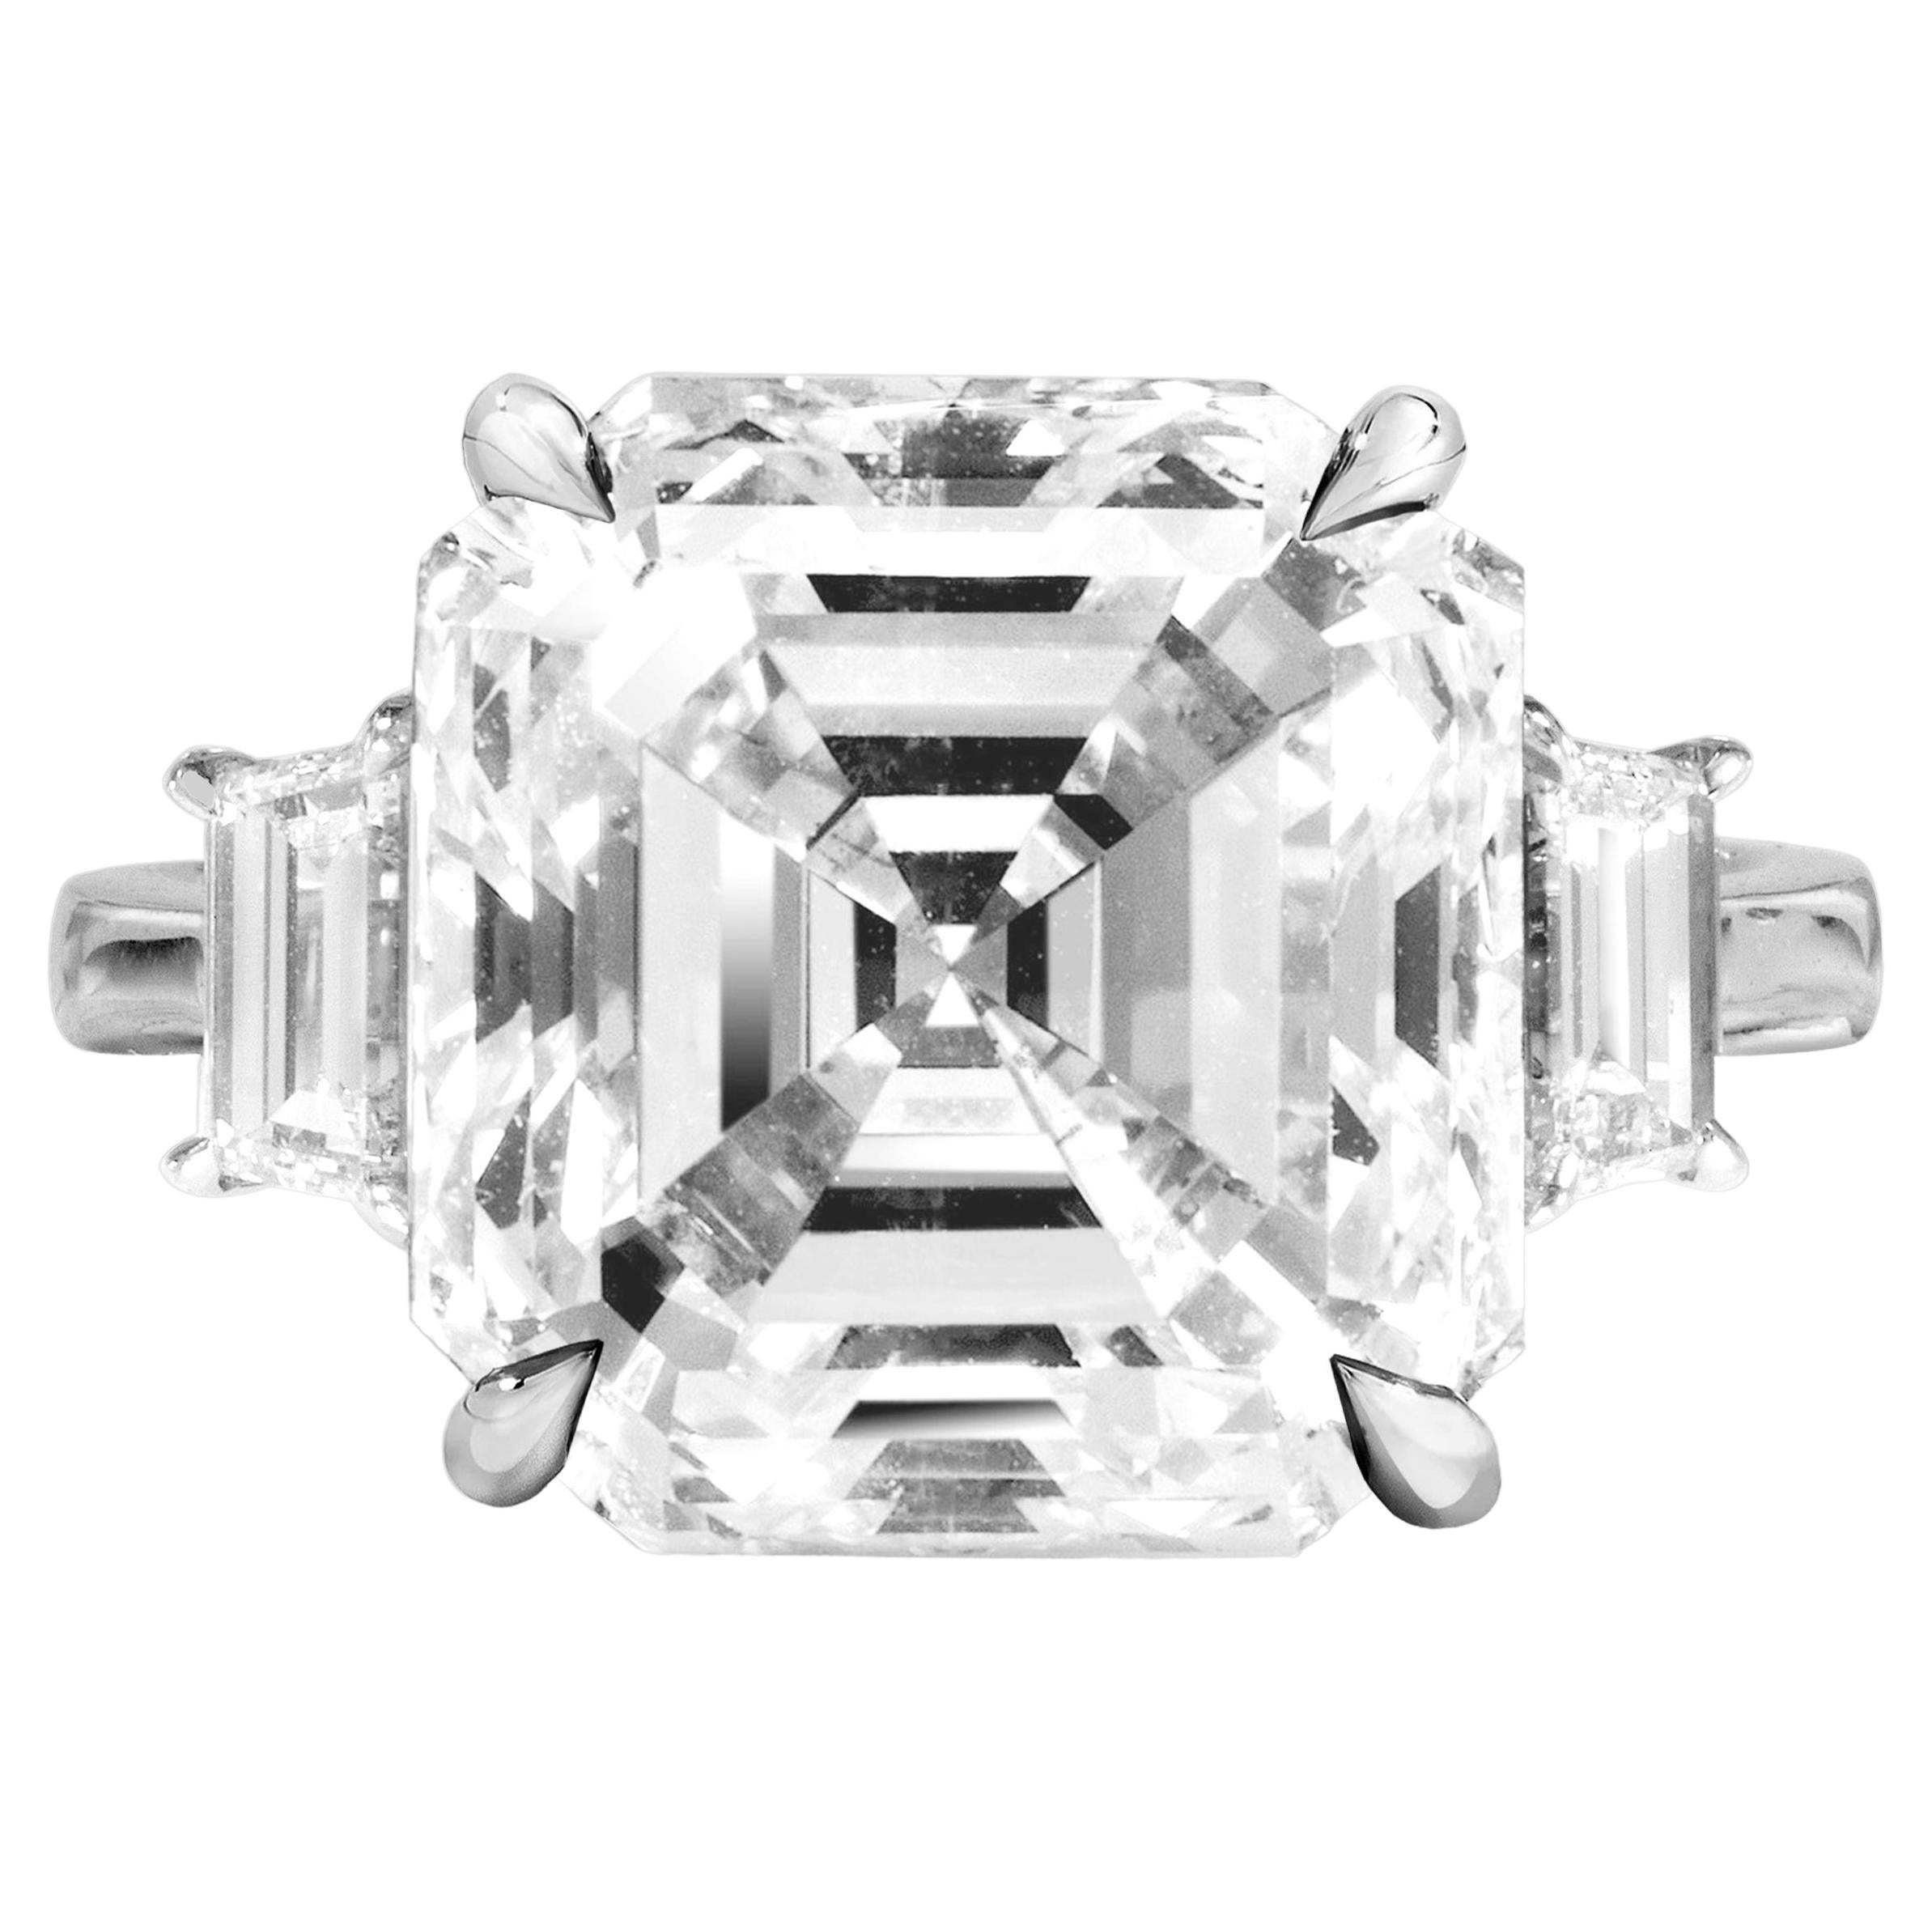 Flawless GIA Certified 3 Carat Asscher Cut Diamond Platinum Ring